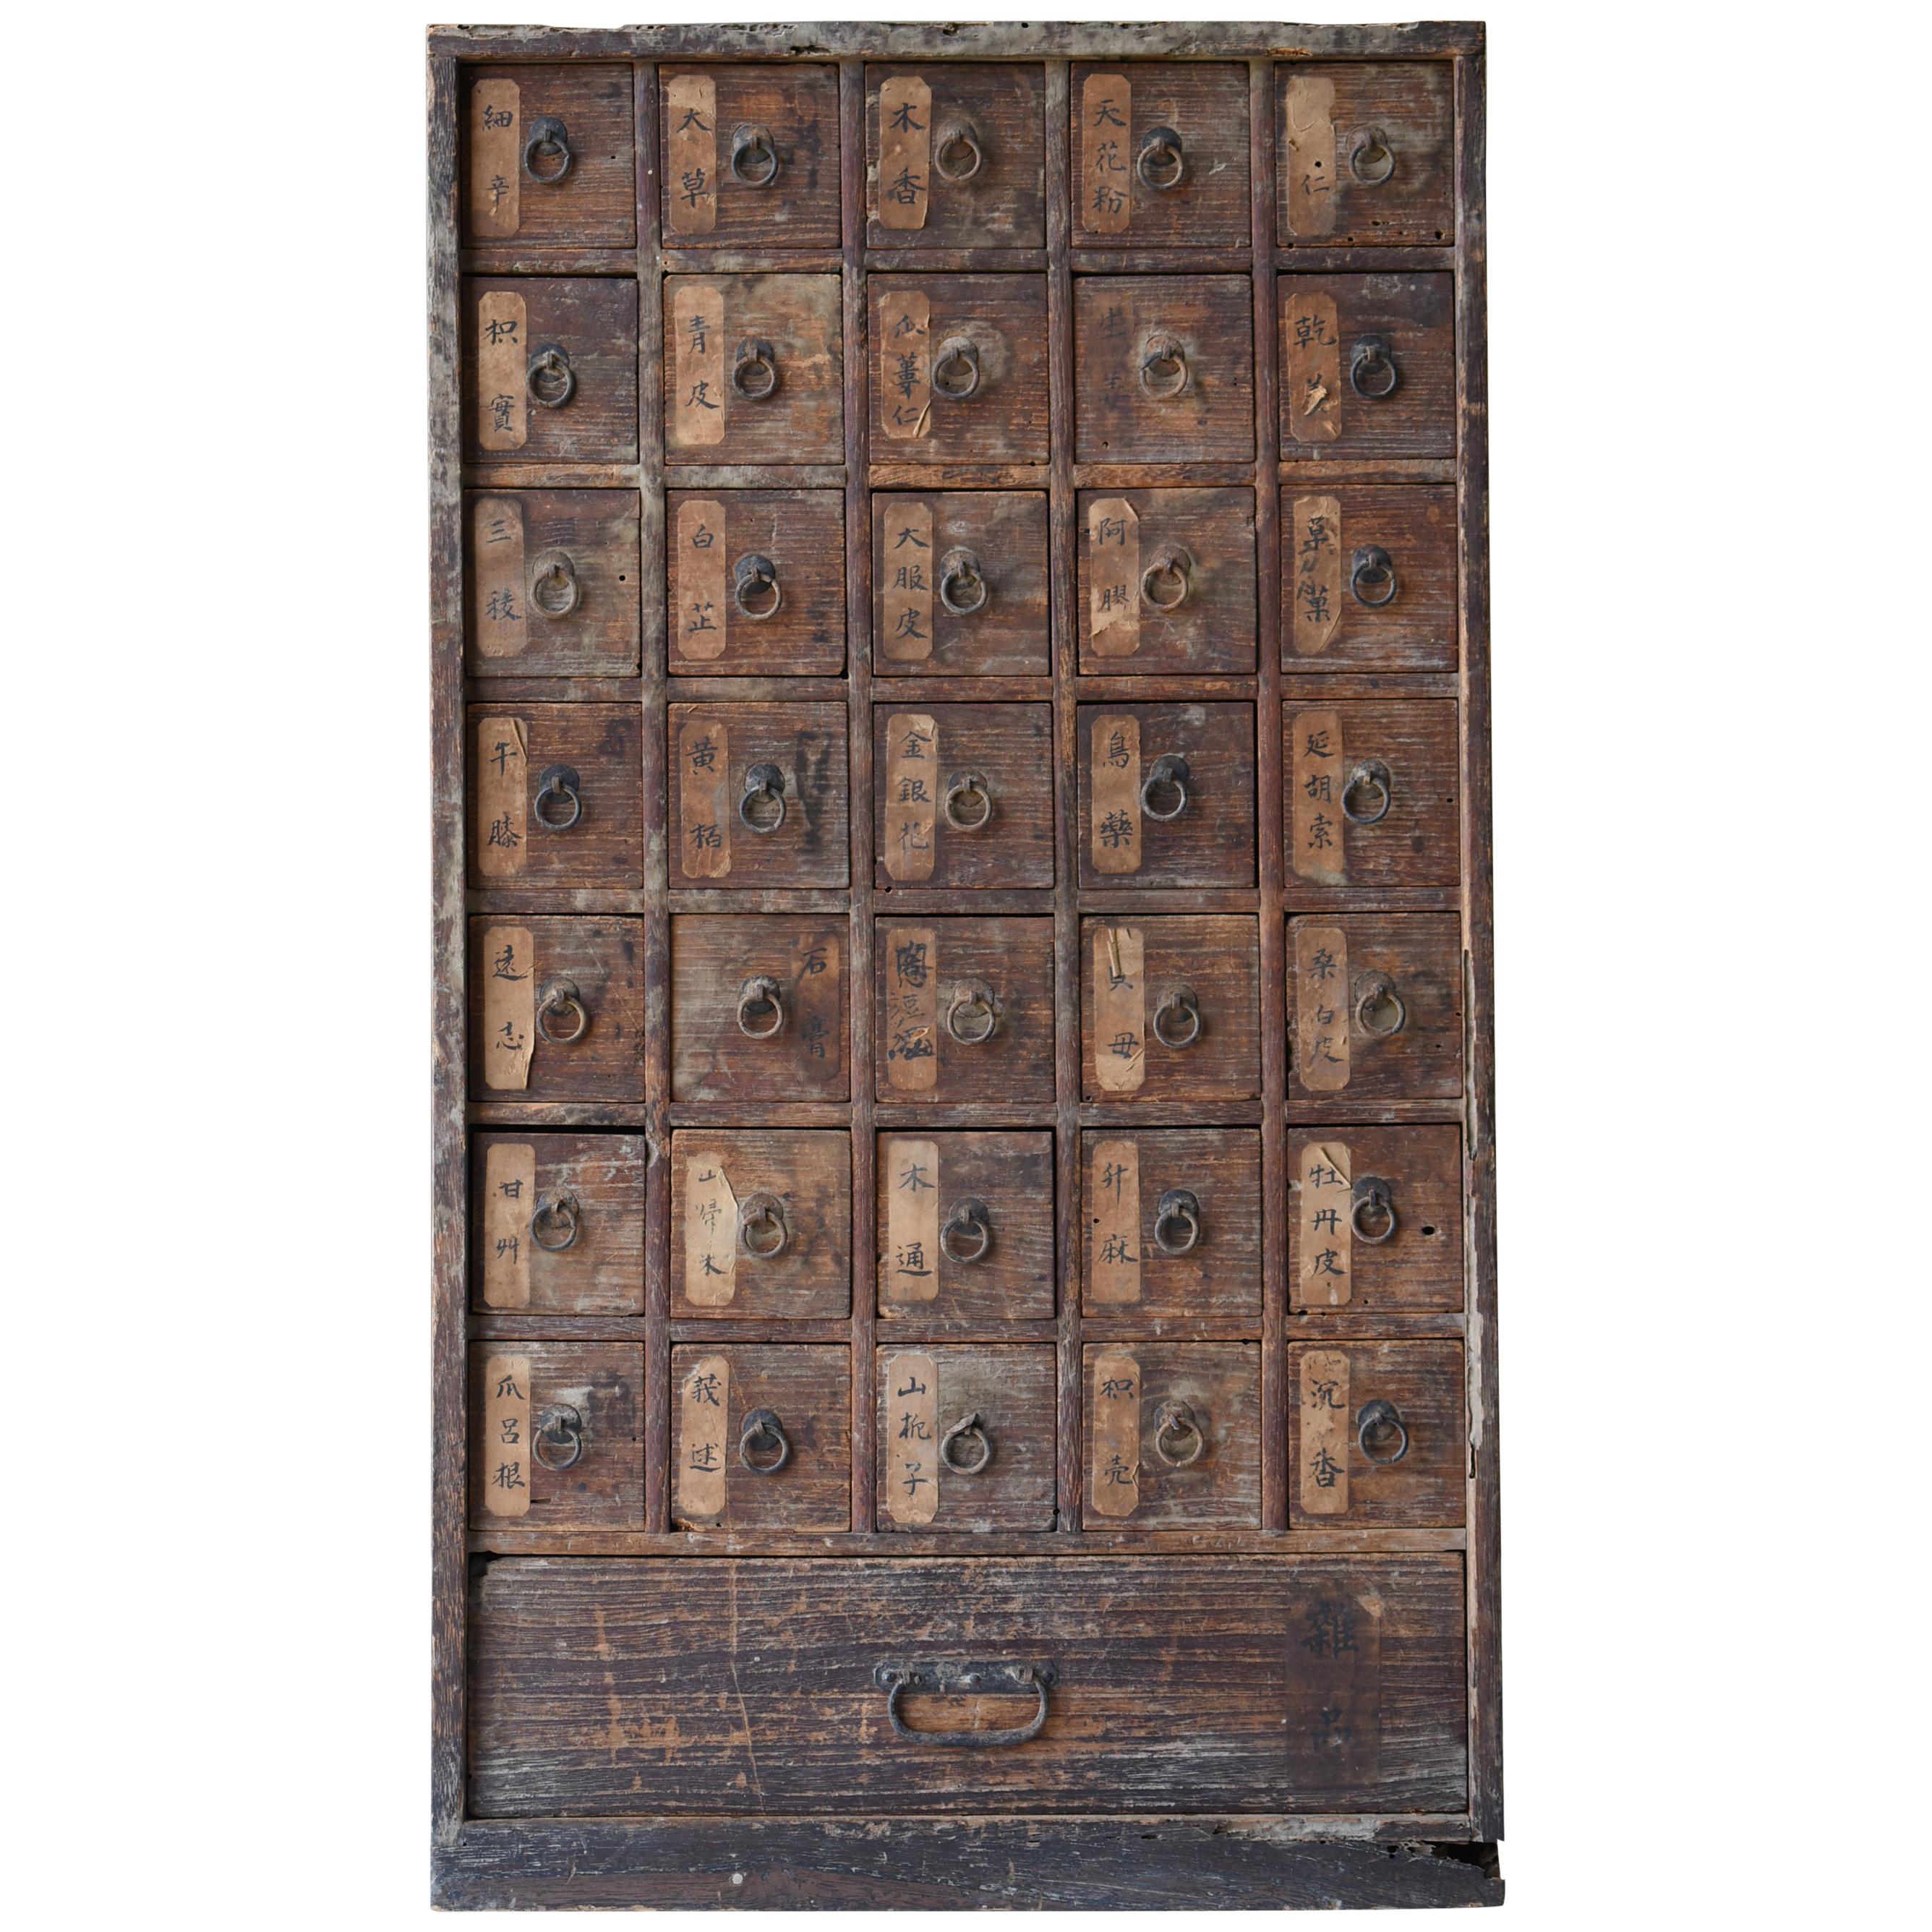 Japanese Antique Medicine Chest 1750s-1850s/Drawer Storage Cabinet Wabisabi